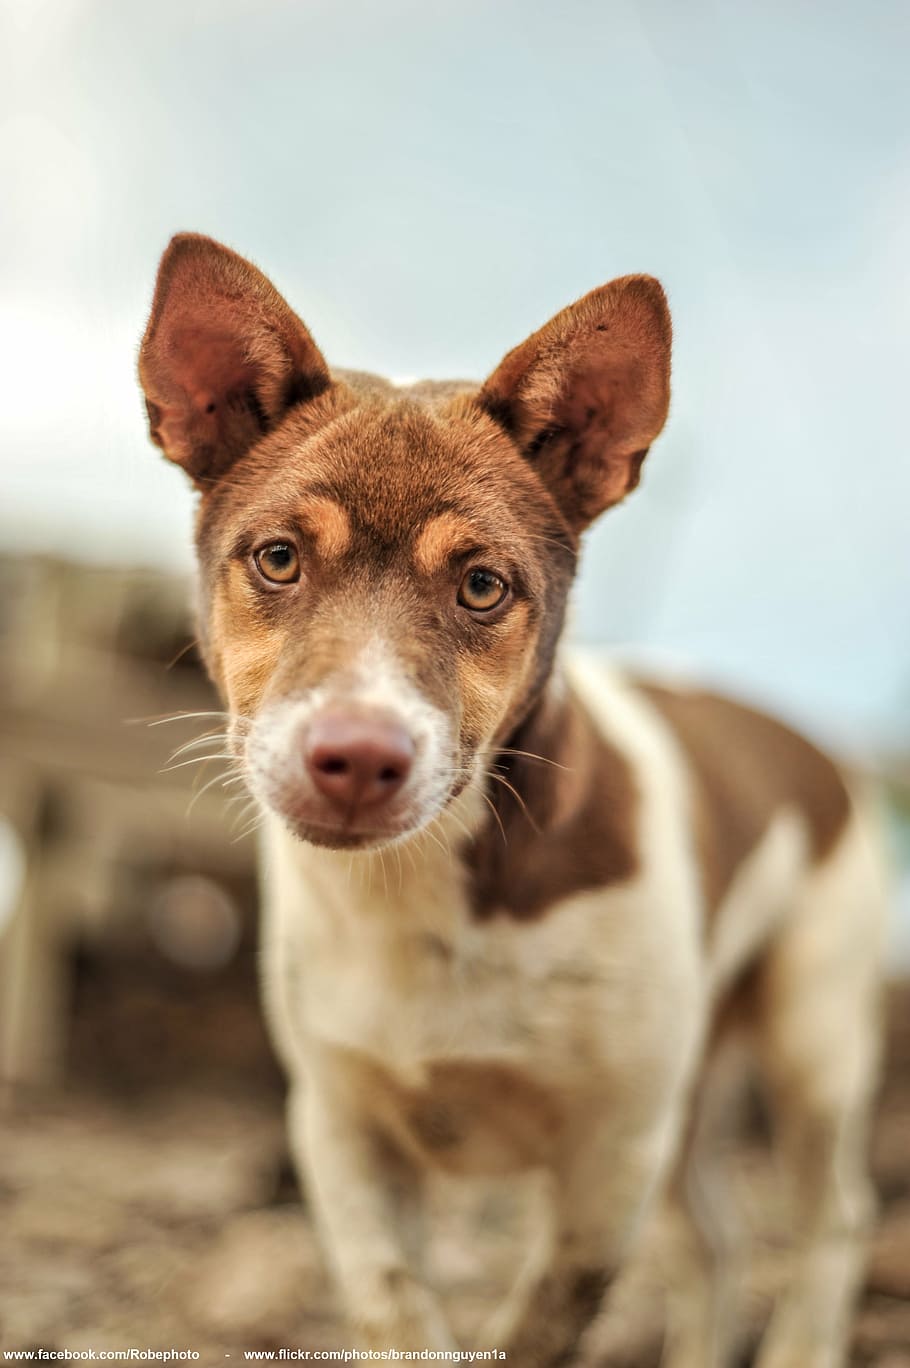 fotografia de close-up, branco, marrom, cachorro, animal, sozinho, um, cabeça, olhar para a frente, animal de estimação